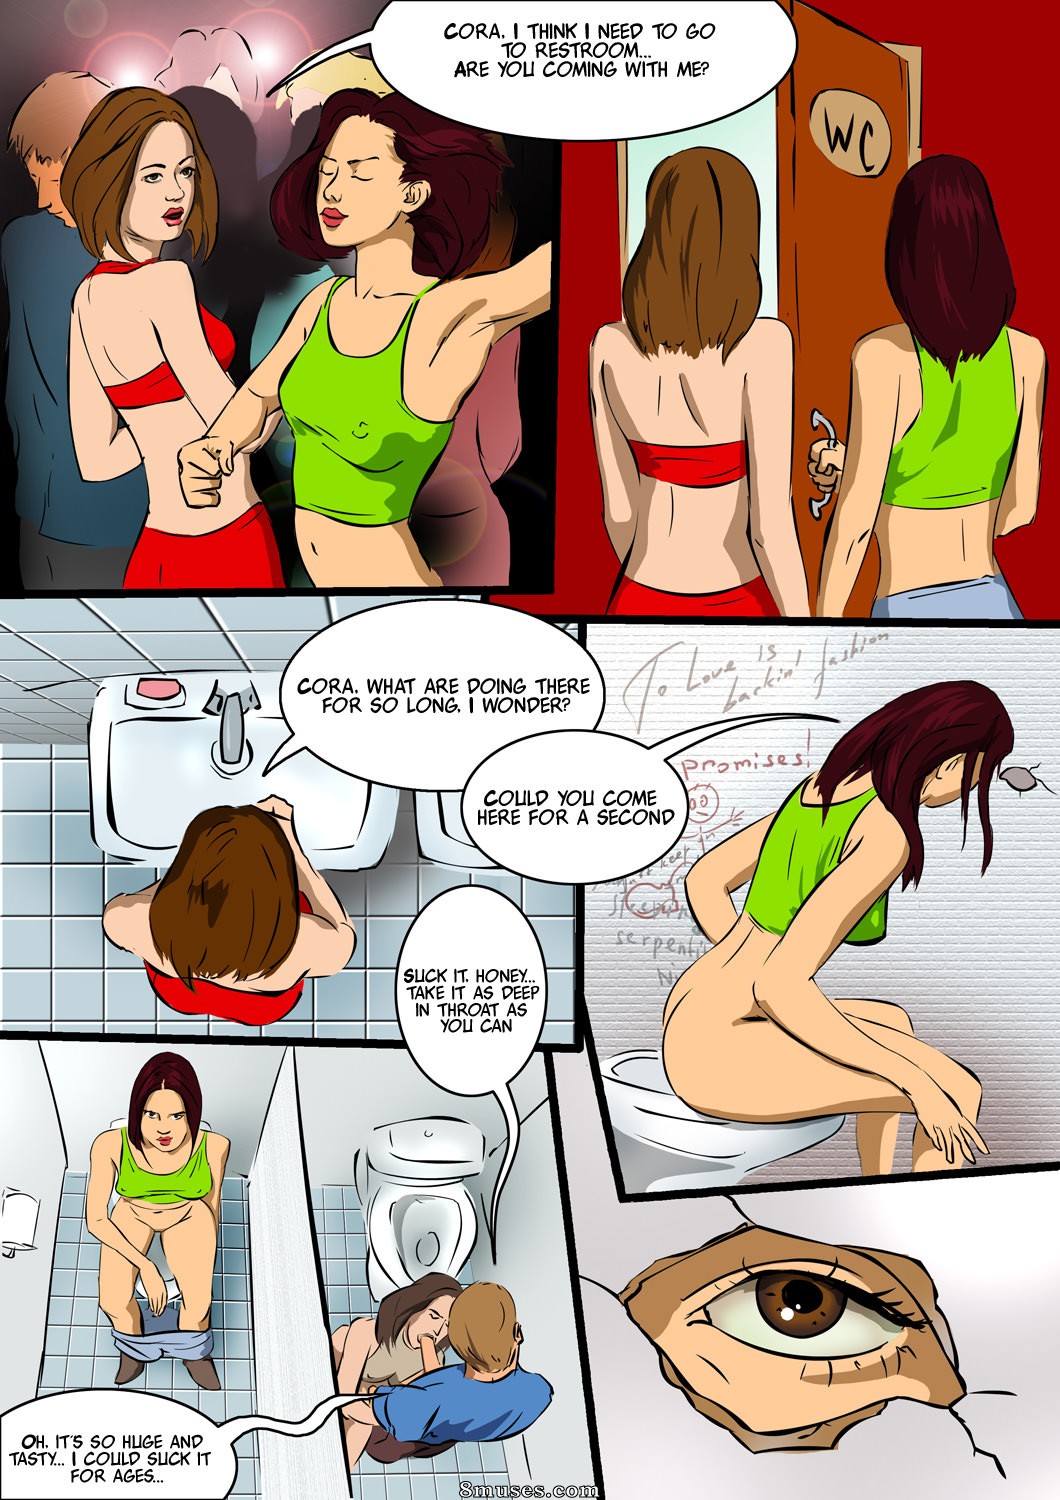 Cartoon Porn Toilet - Night Club Toilet Issue 1 - 8muses Comics - Sex Comics and Porn Cartoons